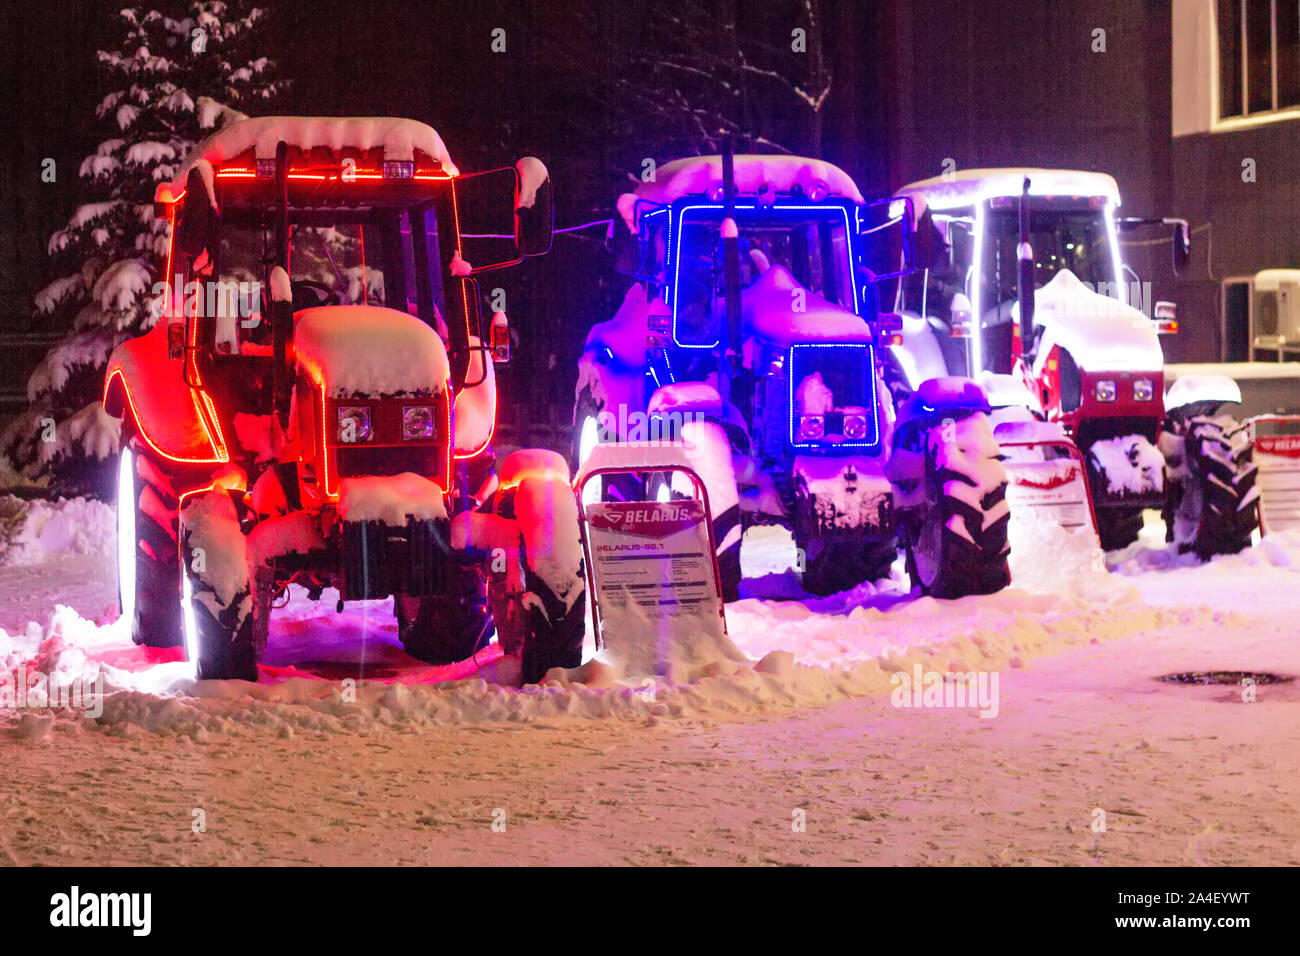 https://c8.alamy.com/compde/2a4eywt/mit-dem-neuen-jahr-lichter-von-einem-traktor-auf-einer-strasse-im-winter-technik-beleuchtung-feierlichen-vasalemma-belarus-030119-eingerichtet-2a4eywt.jpg